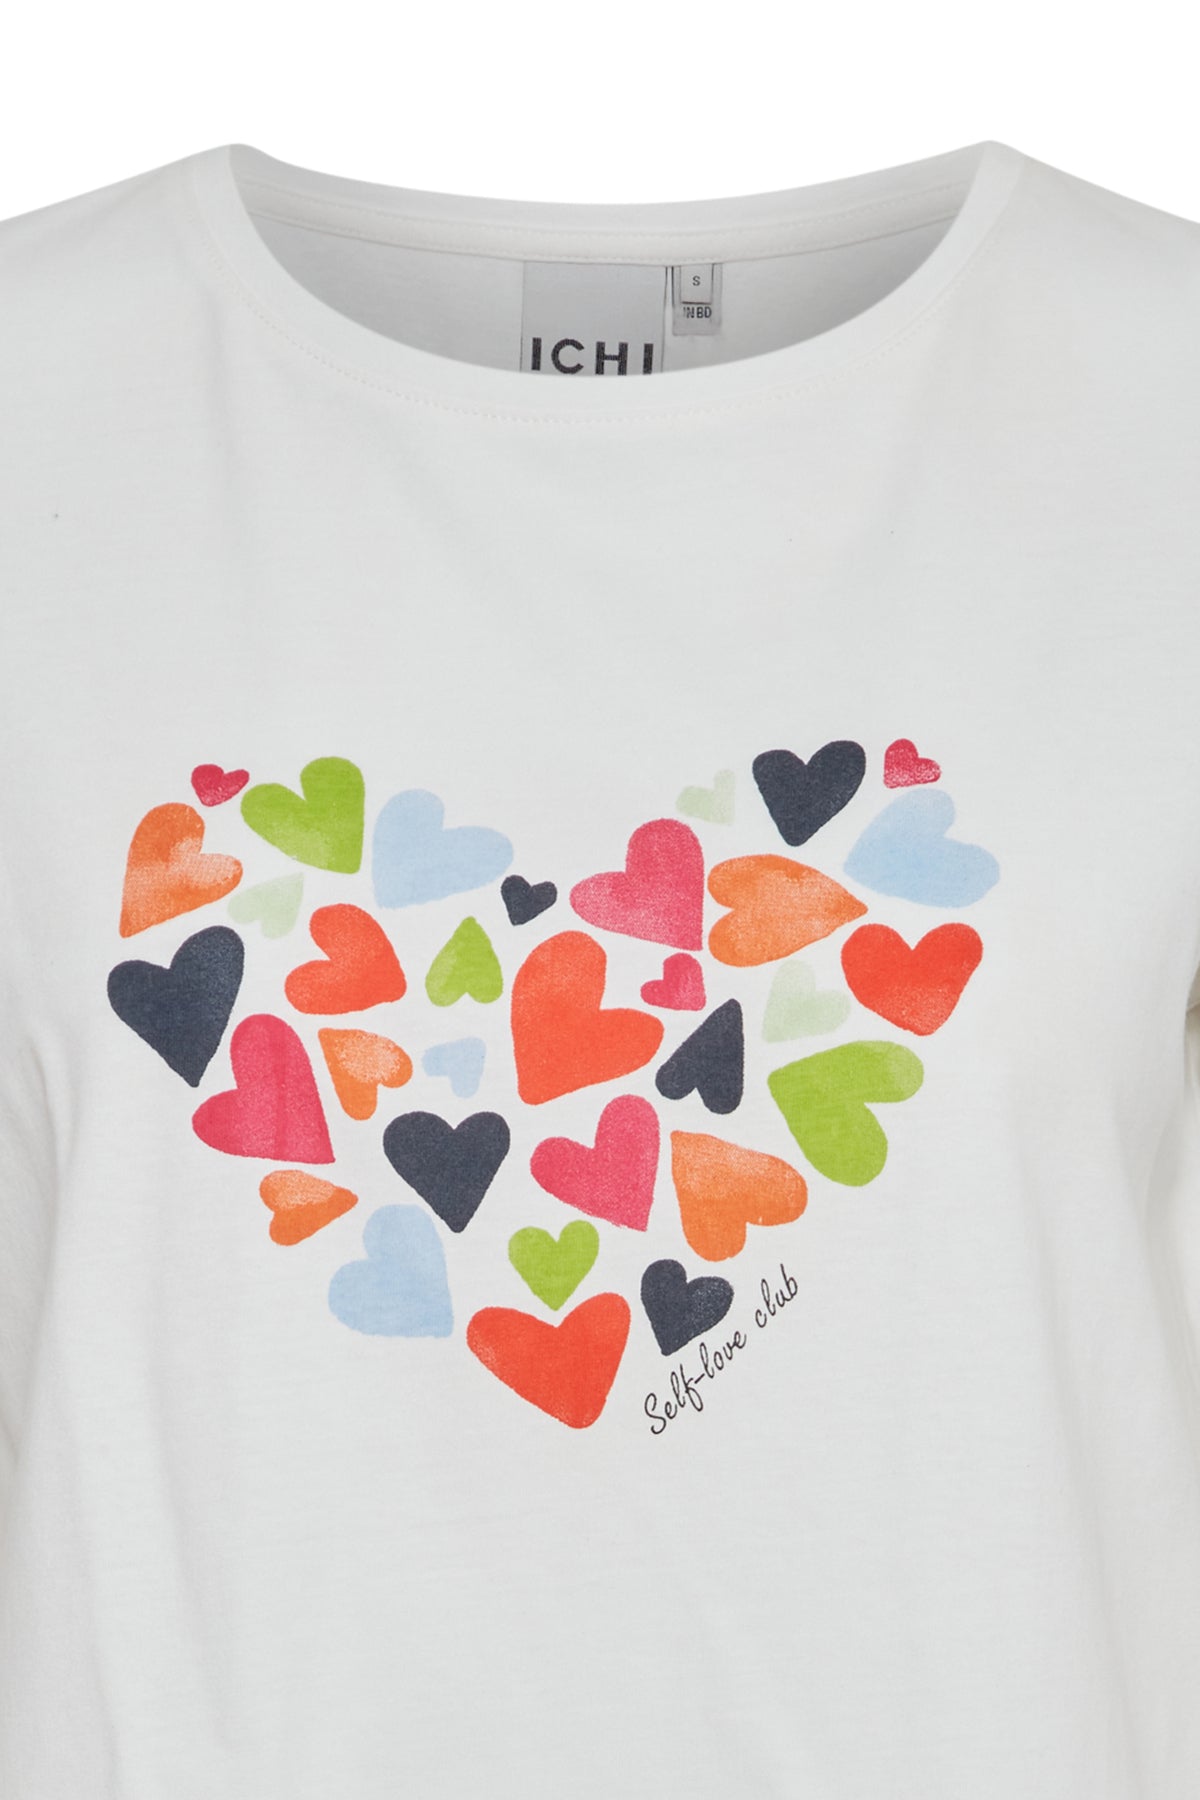 Camiseta ICHI Ossi